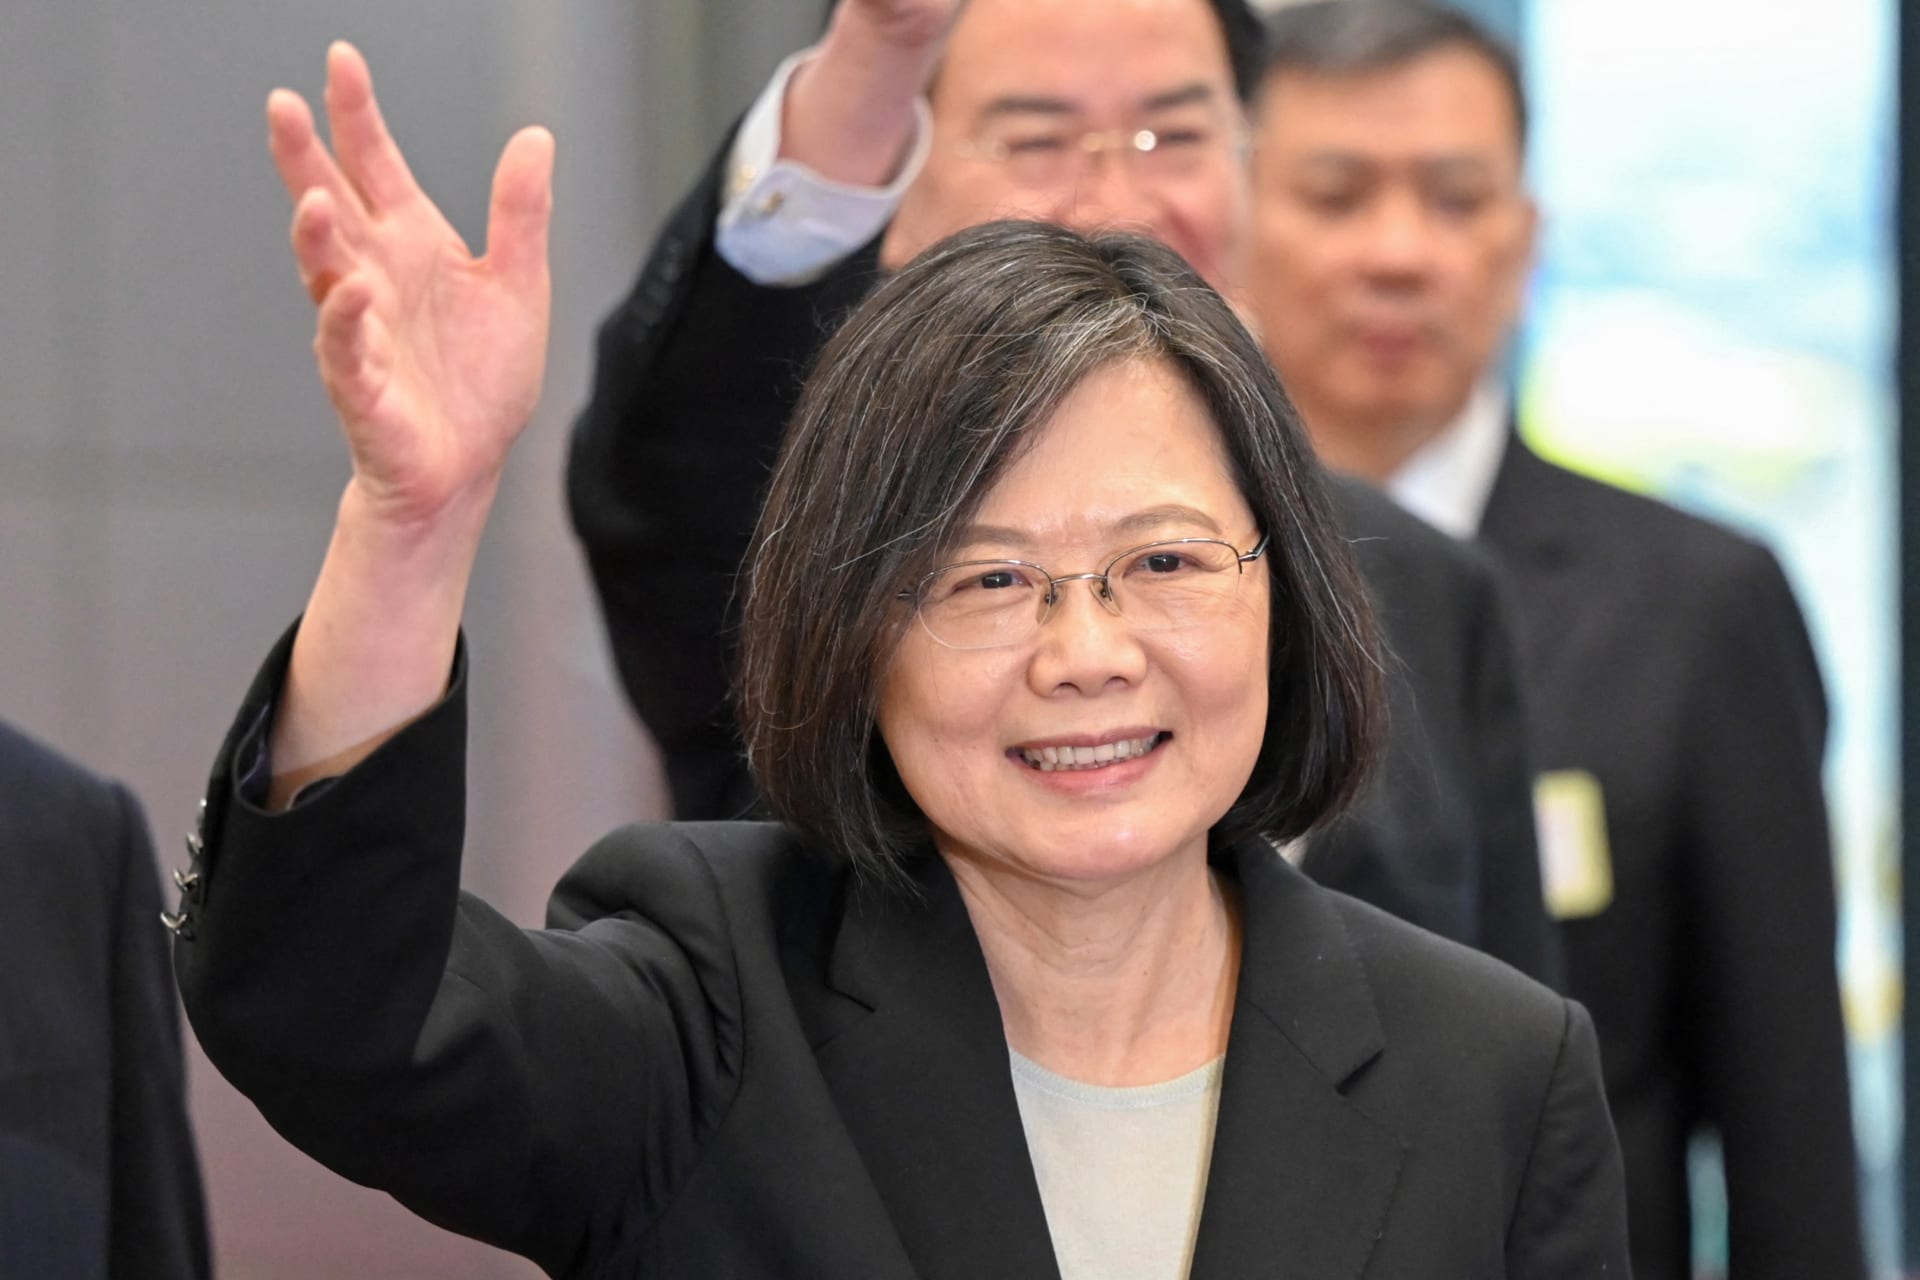 الصين تندد بزيارة رئيسة تايوان للولايات المتحدة: "تنتهك سيادتنا"